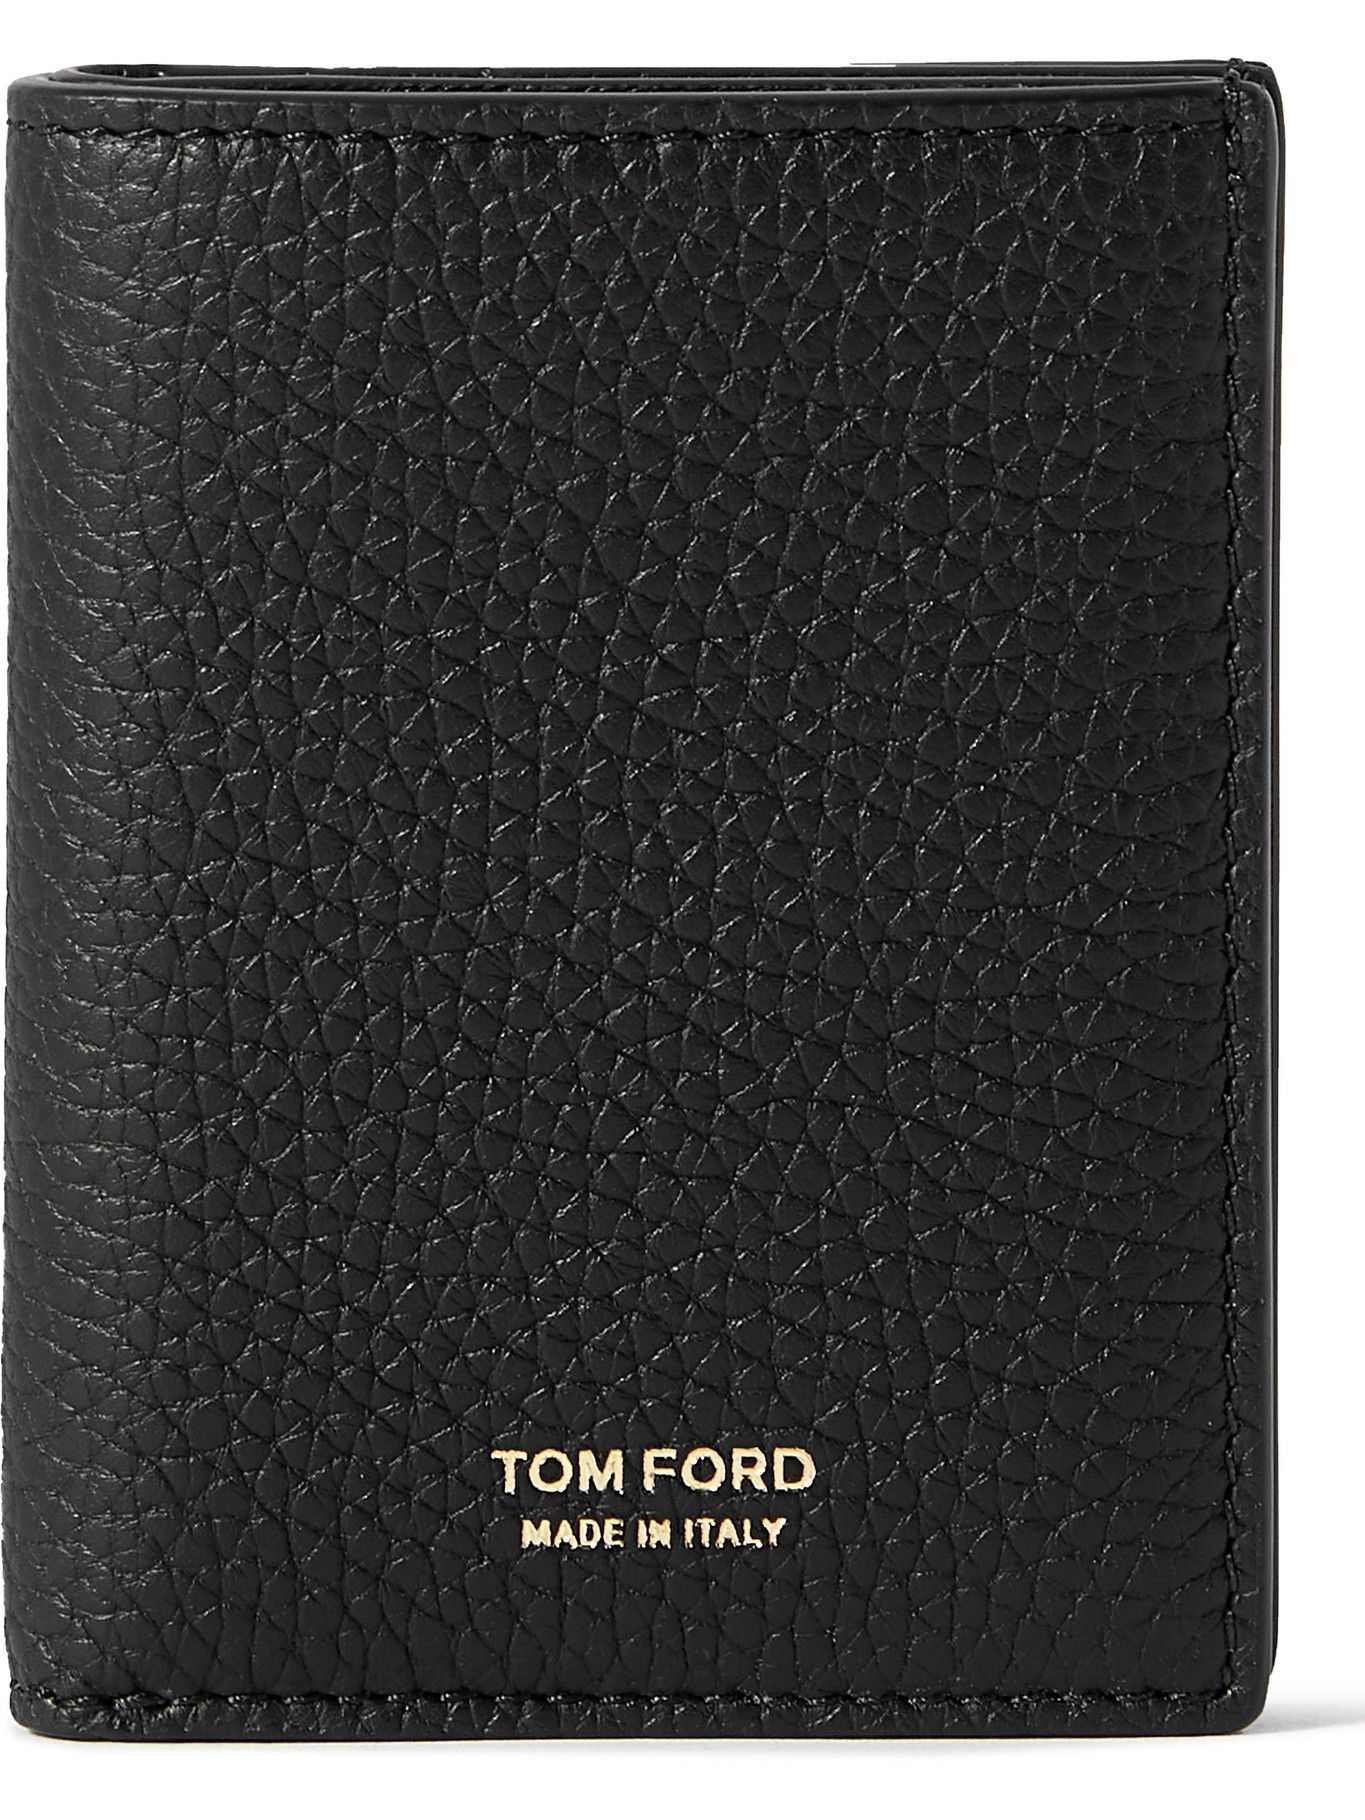 TOM FORD - Full-Grain Leather Bifold Cardholder TOM FORD